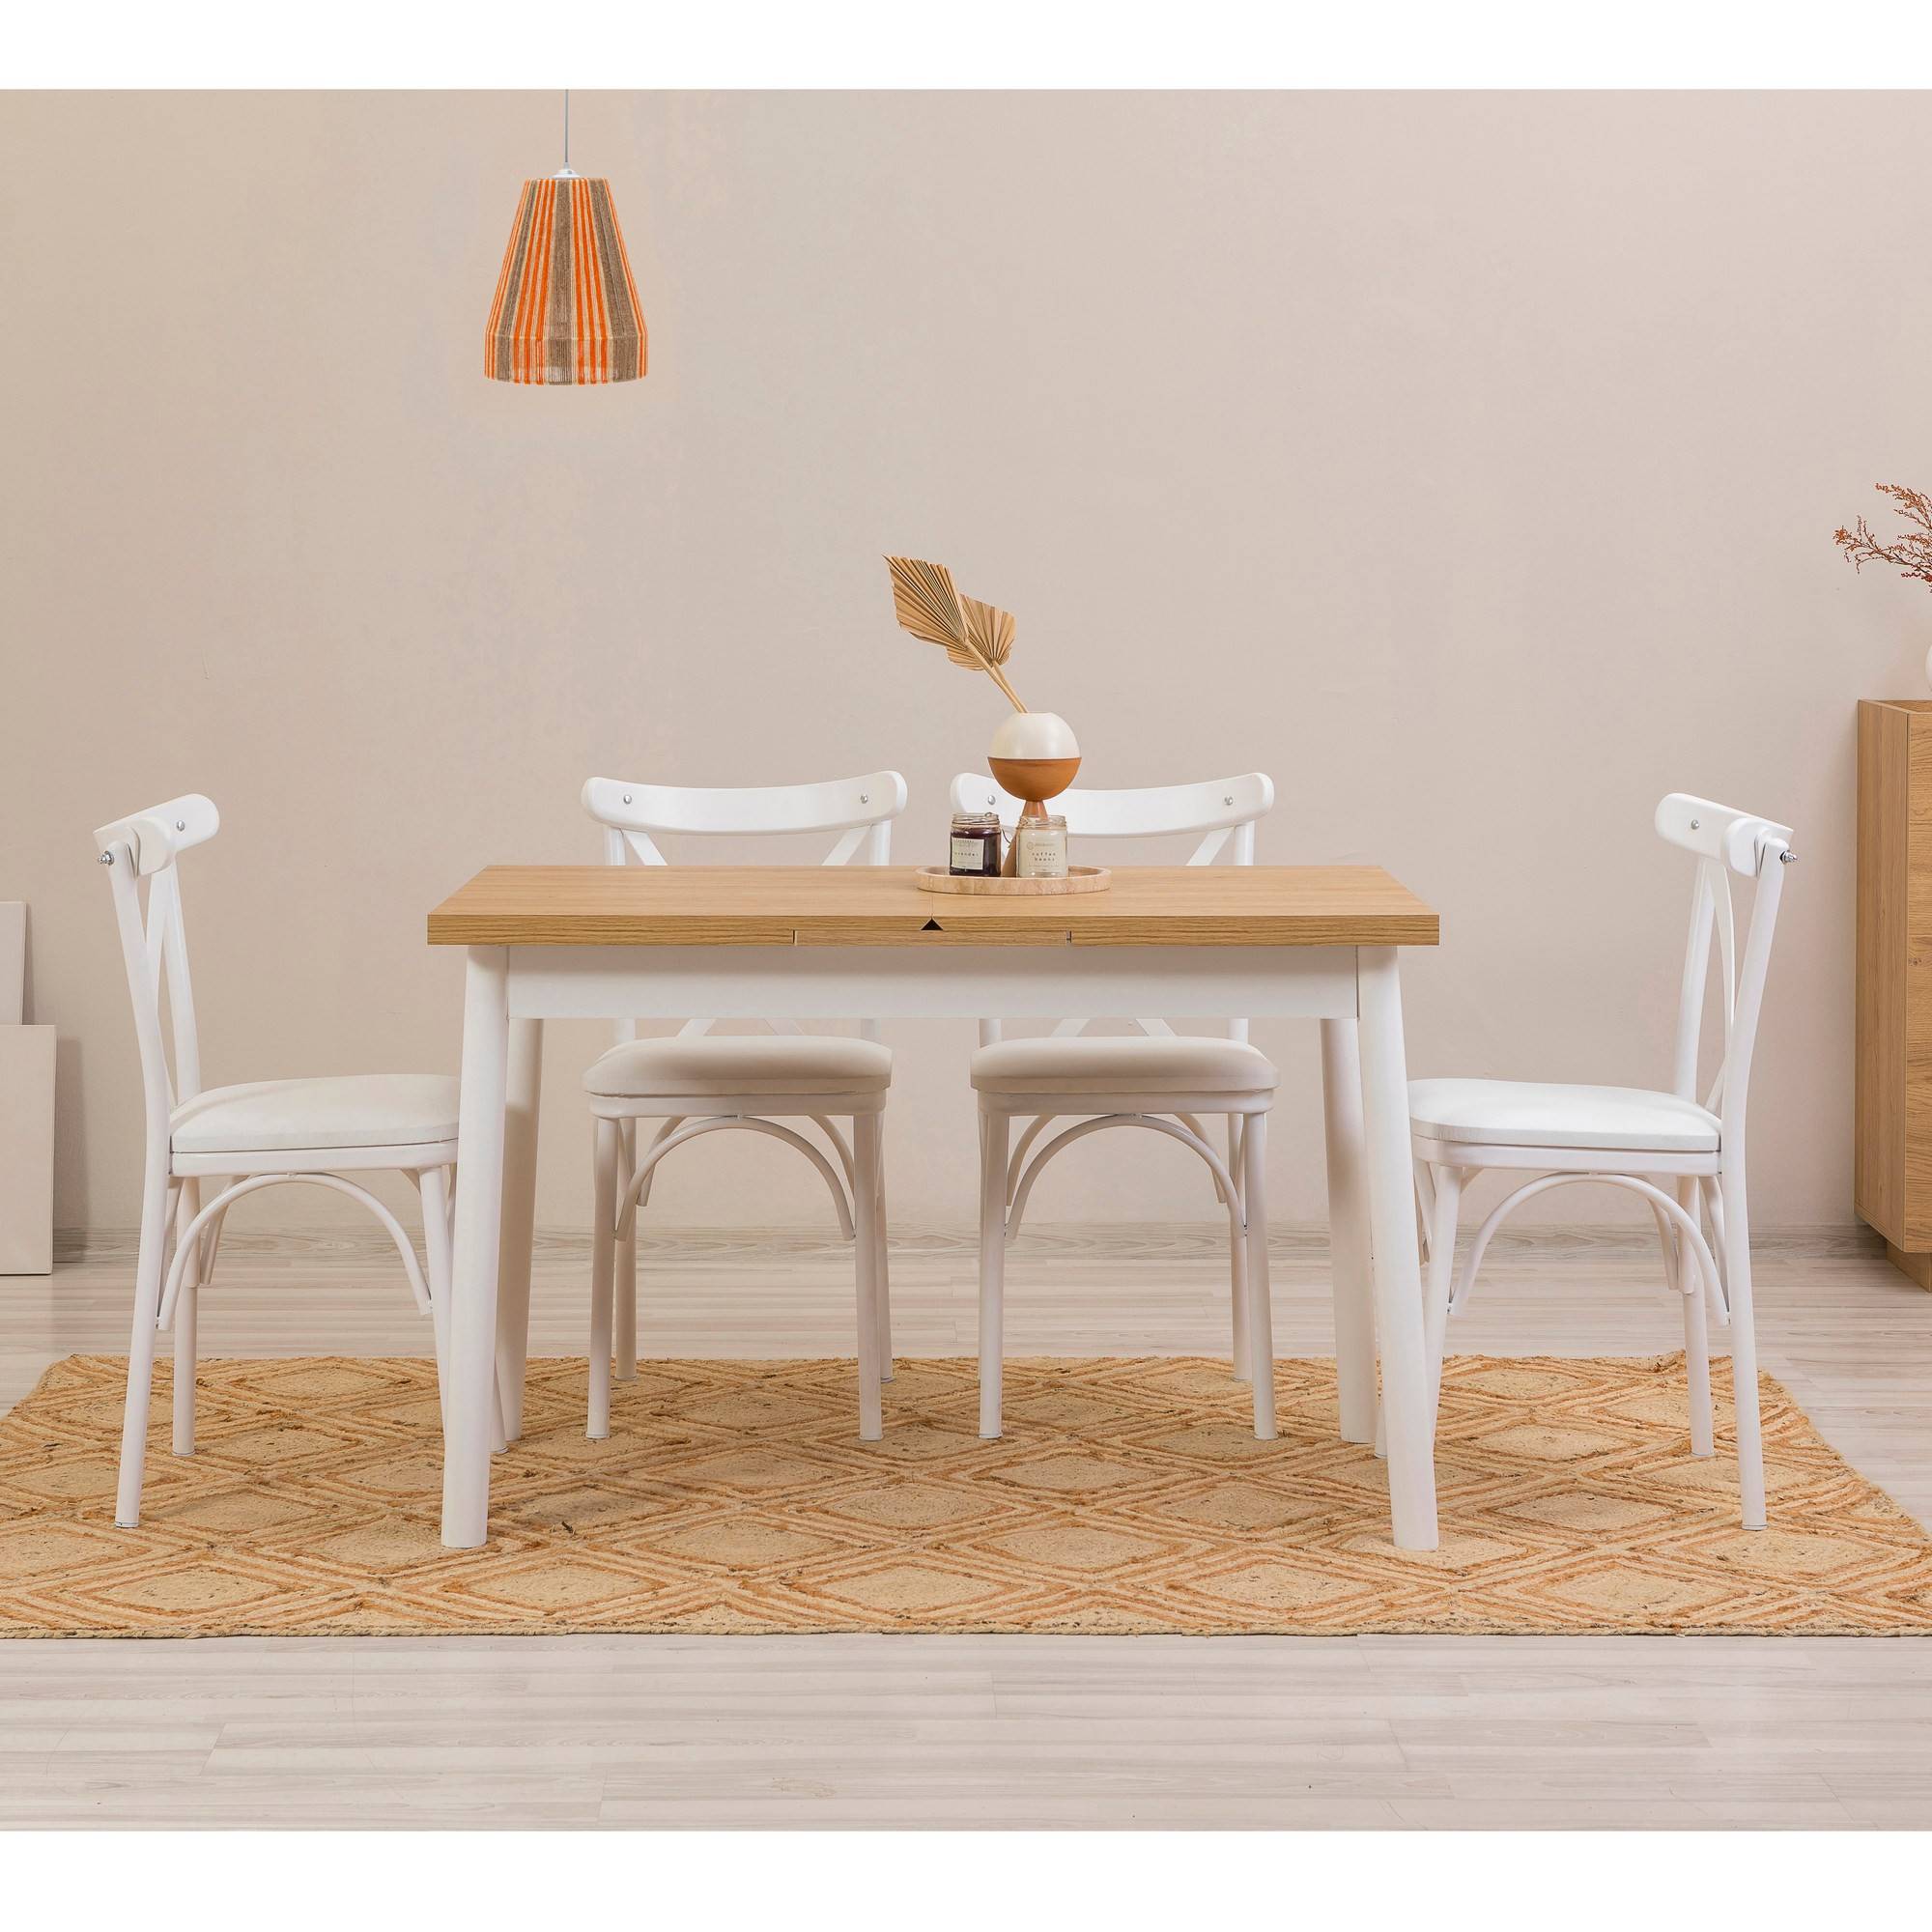 Juego de 4 sillas blancas y 1 mesa extensible Iridus blanca y madera clara